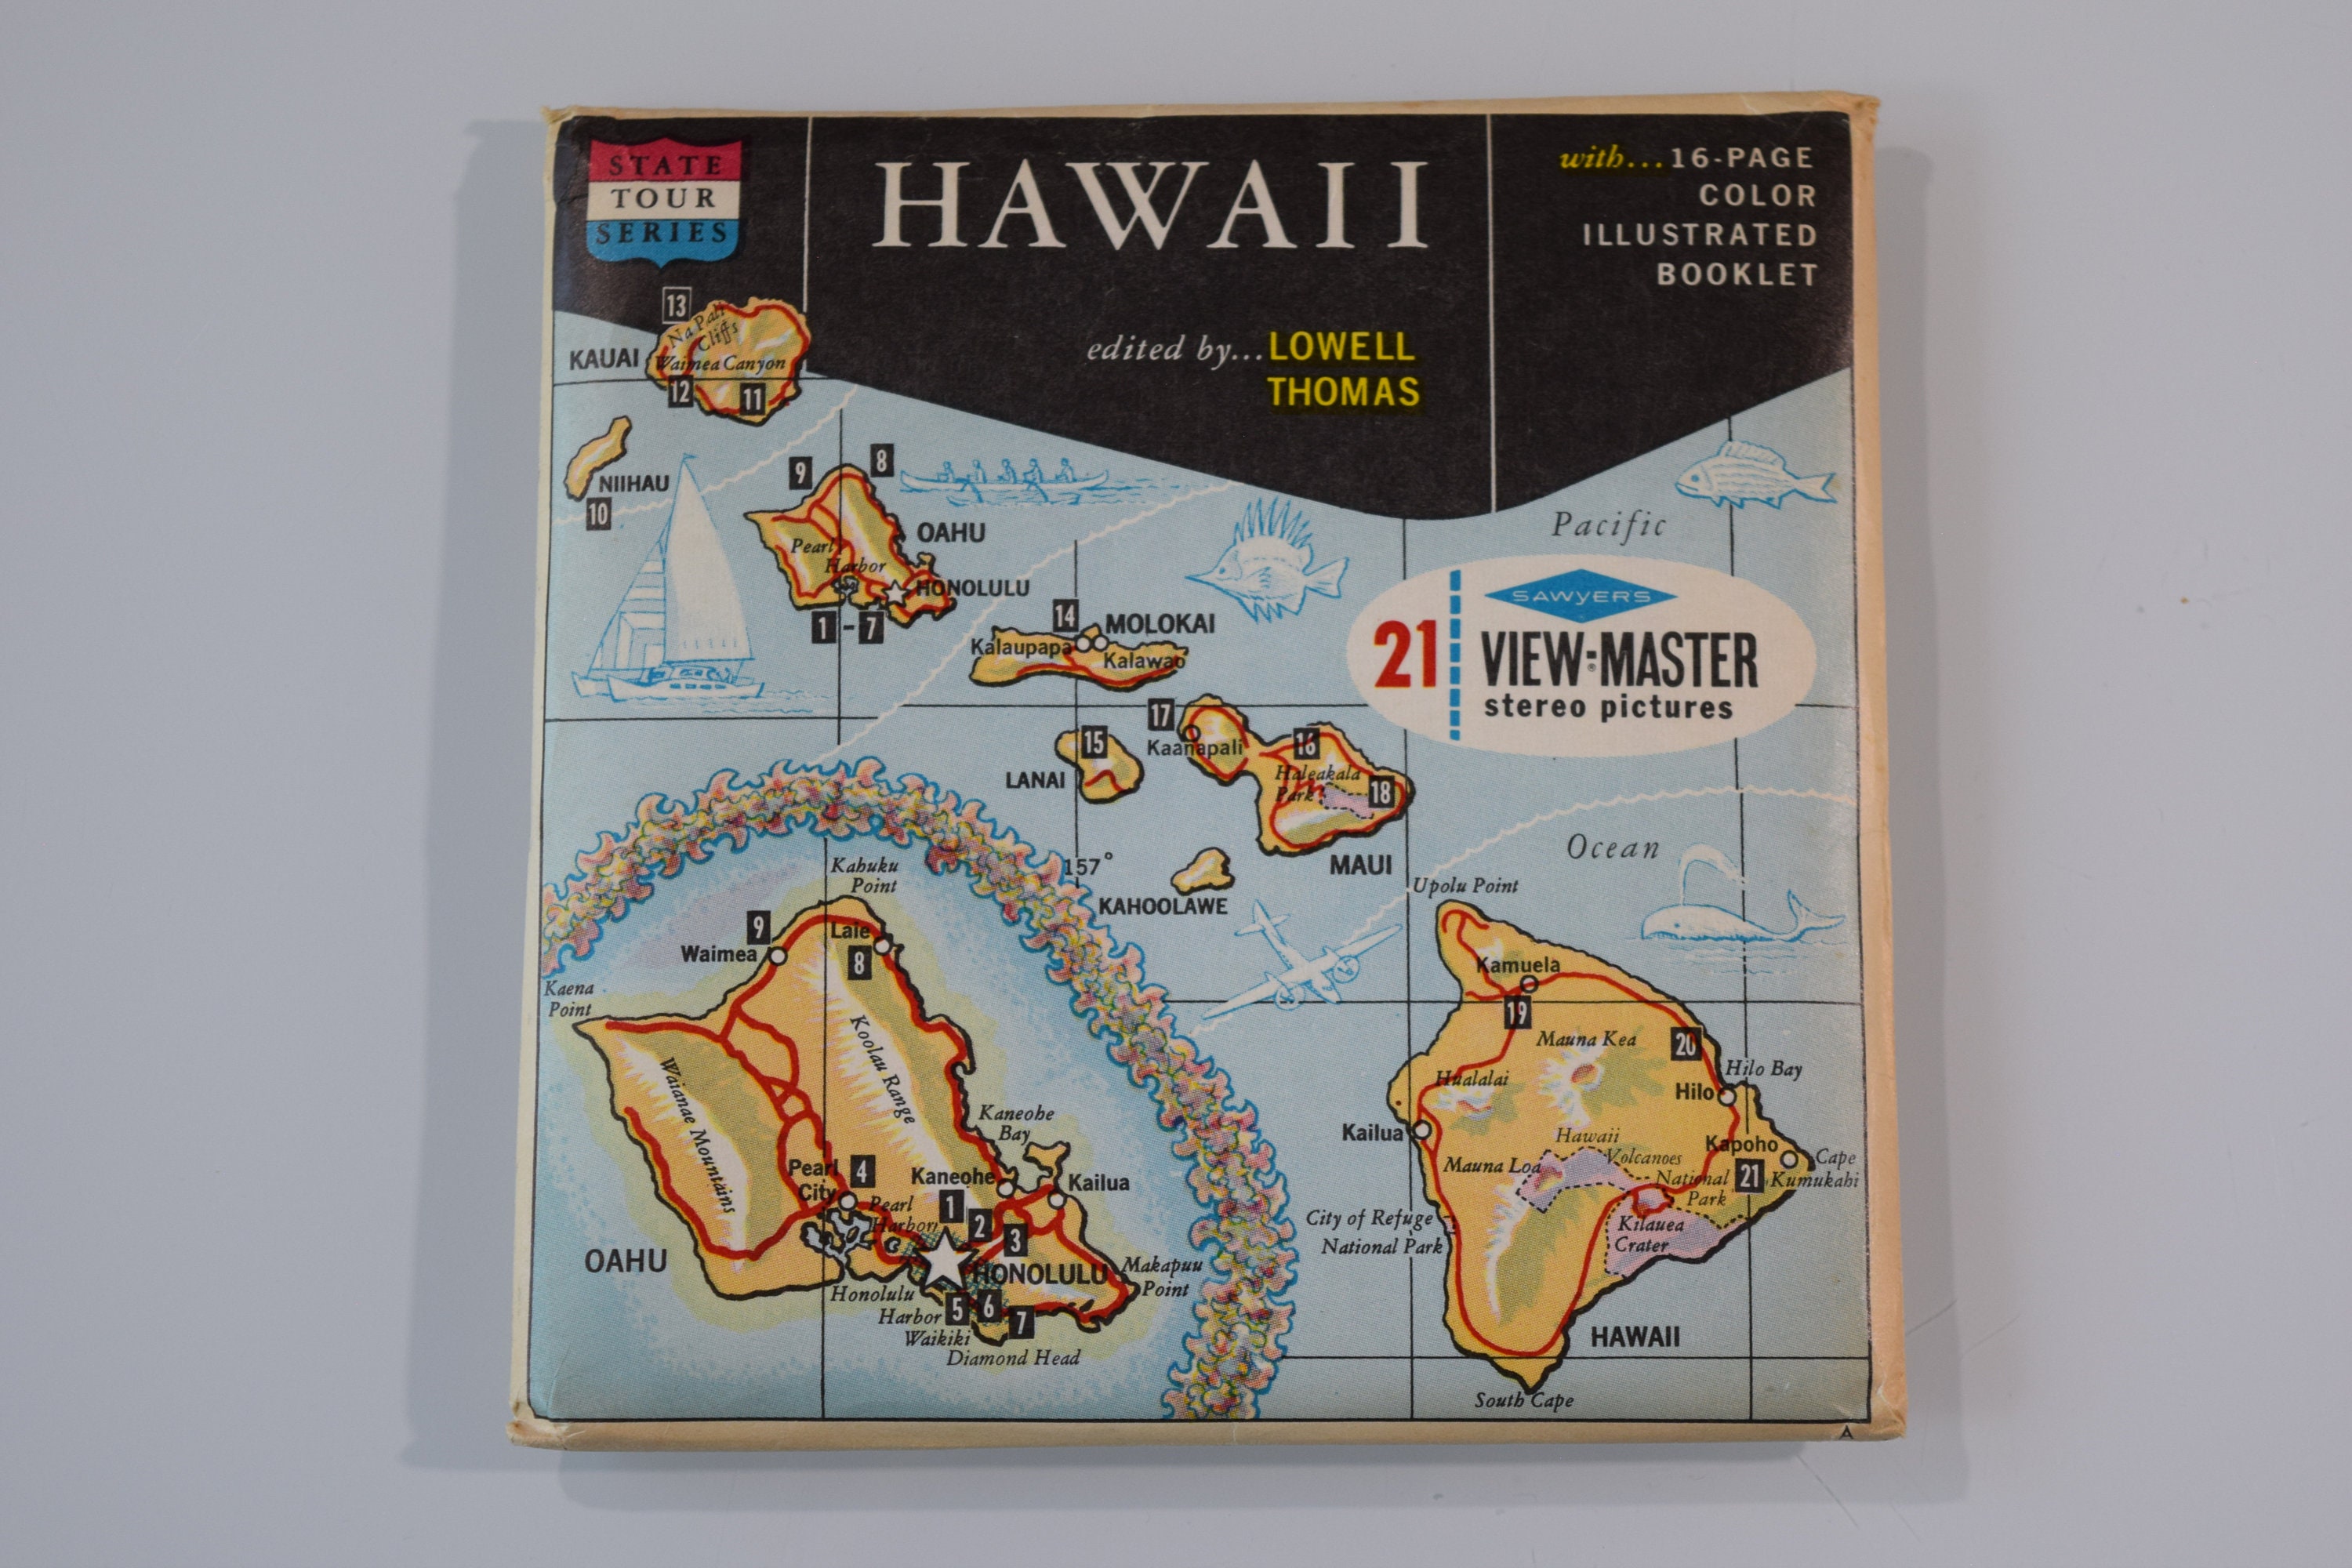 Hawaii, Vintage View-master Reels, State Tour Series, Honolulu